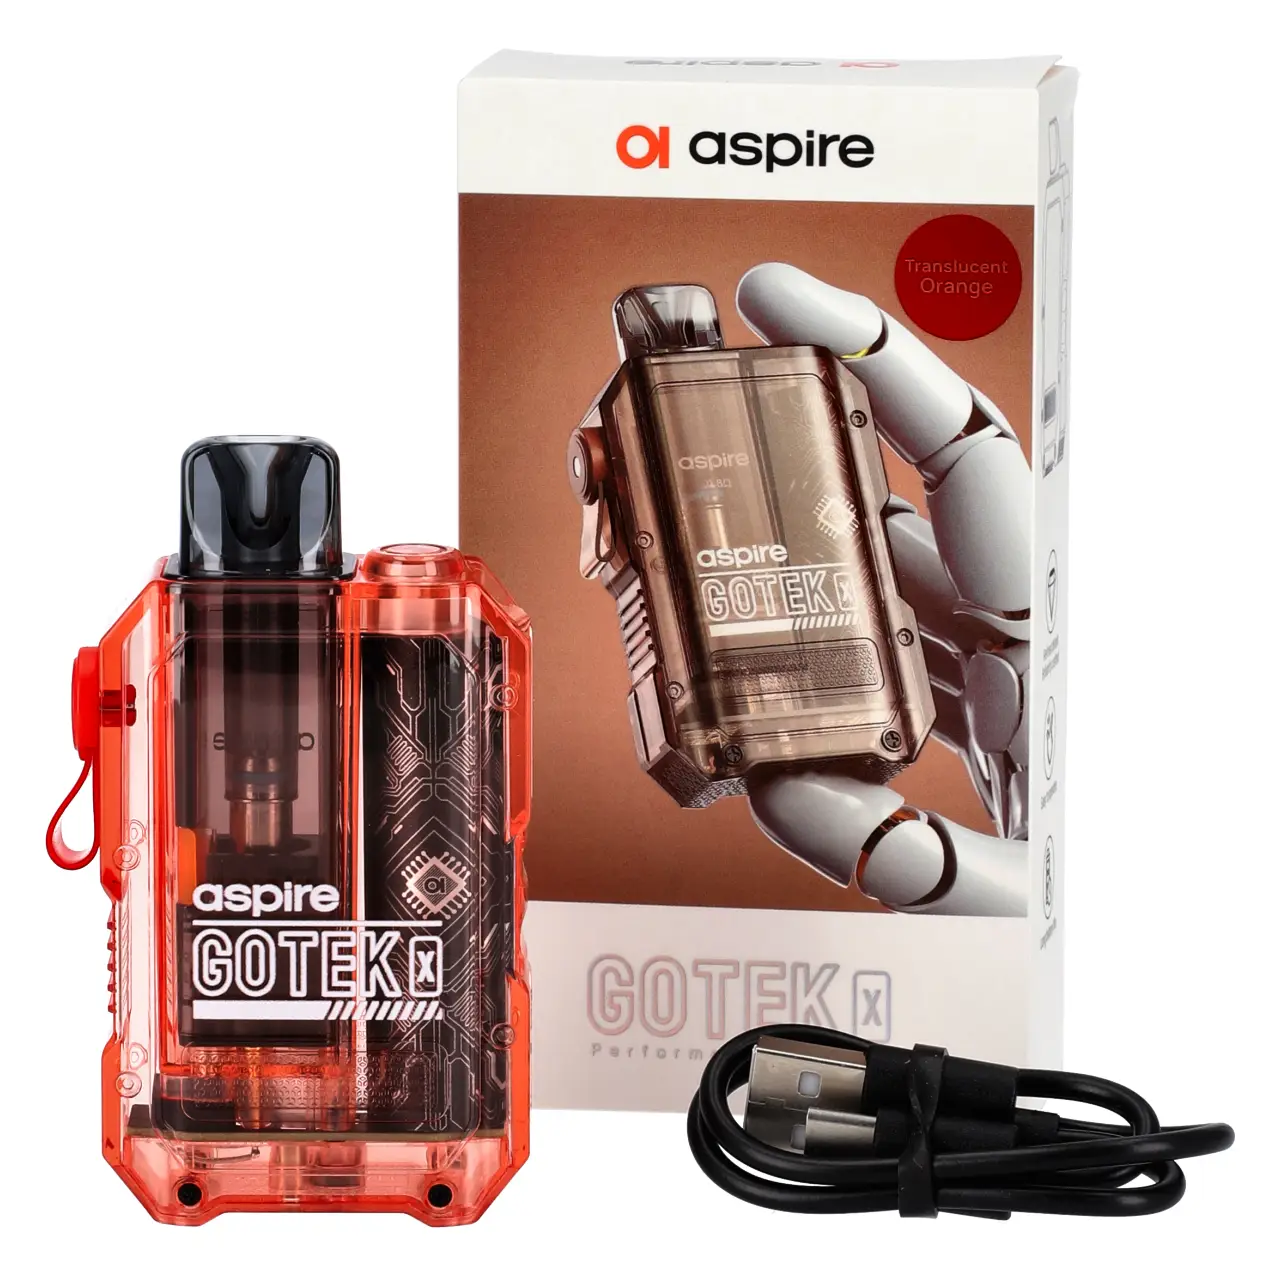 Aspire Gotek X E-Zigaretten Set in Transparent Orange